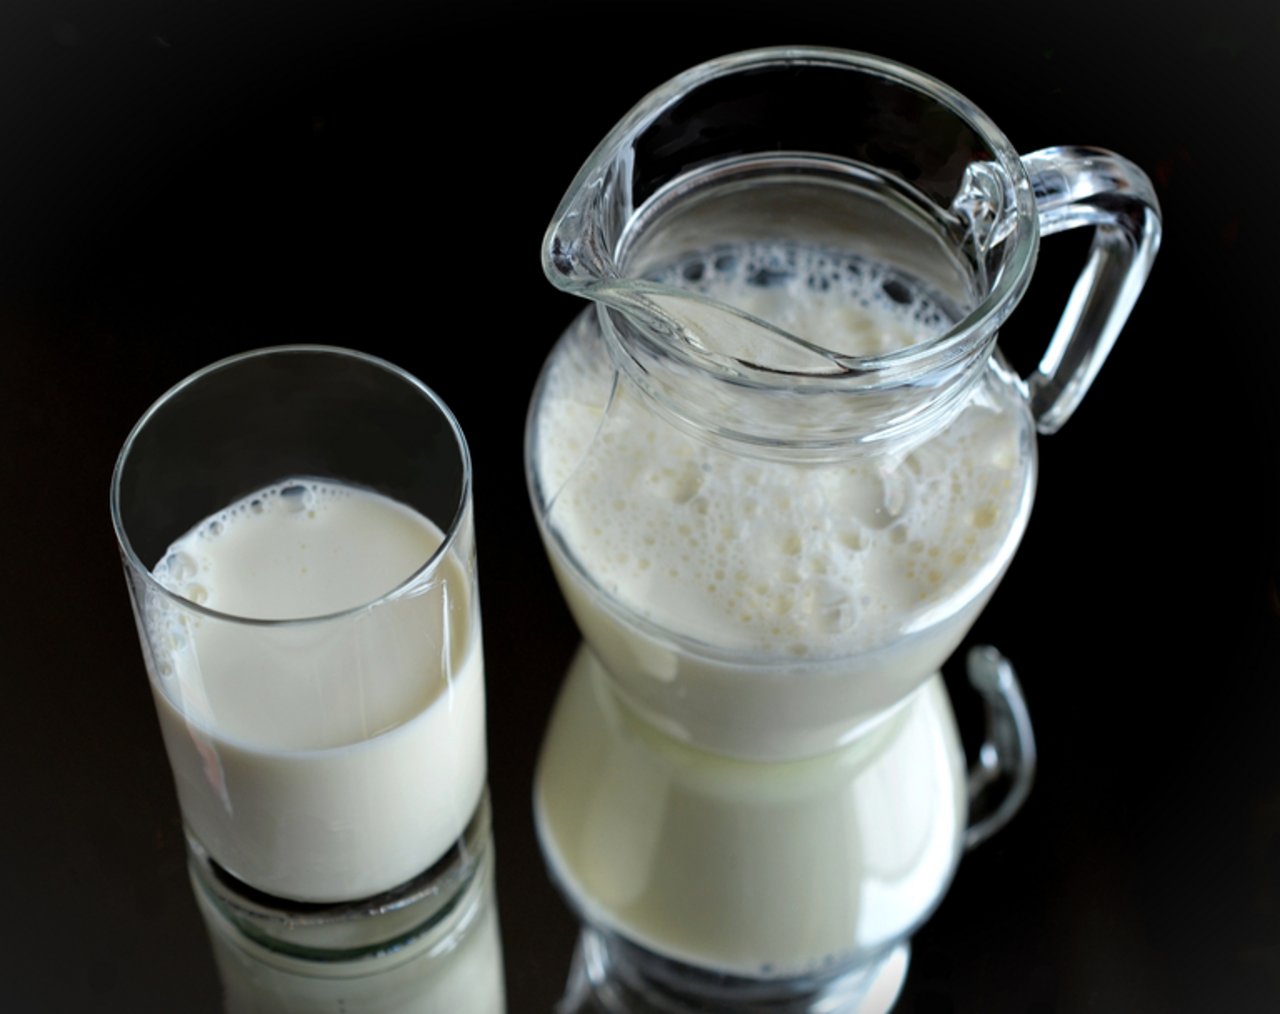 Der Milchexport ist wichtig für die neuseeländische Landwirtschaft. (Bild zVg)